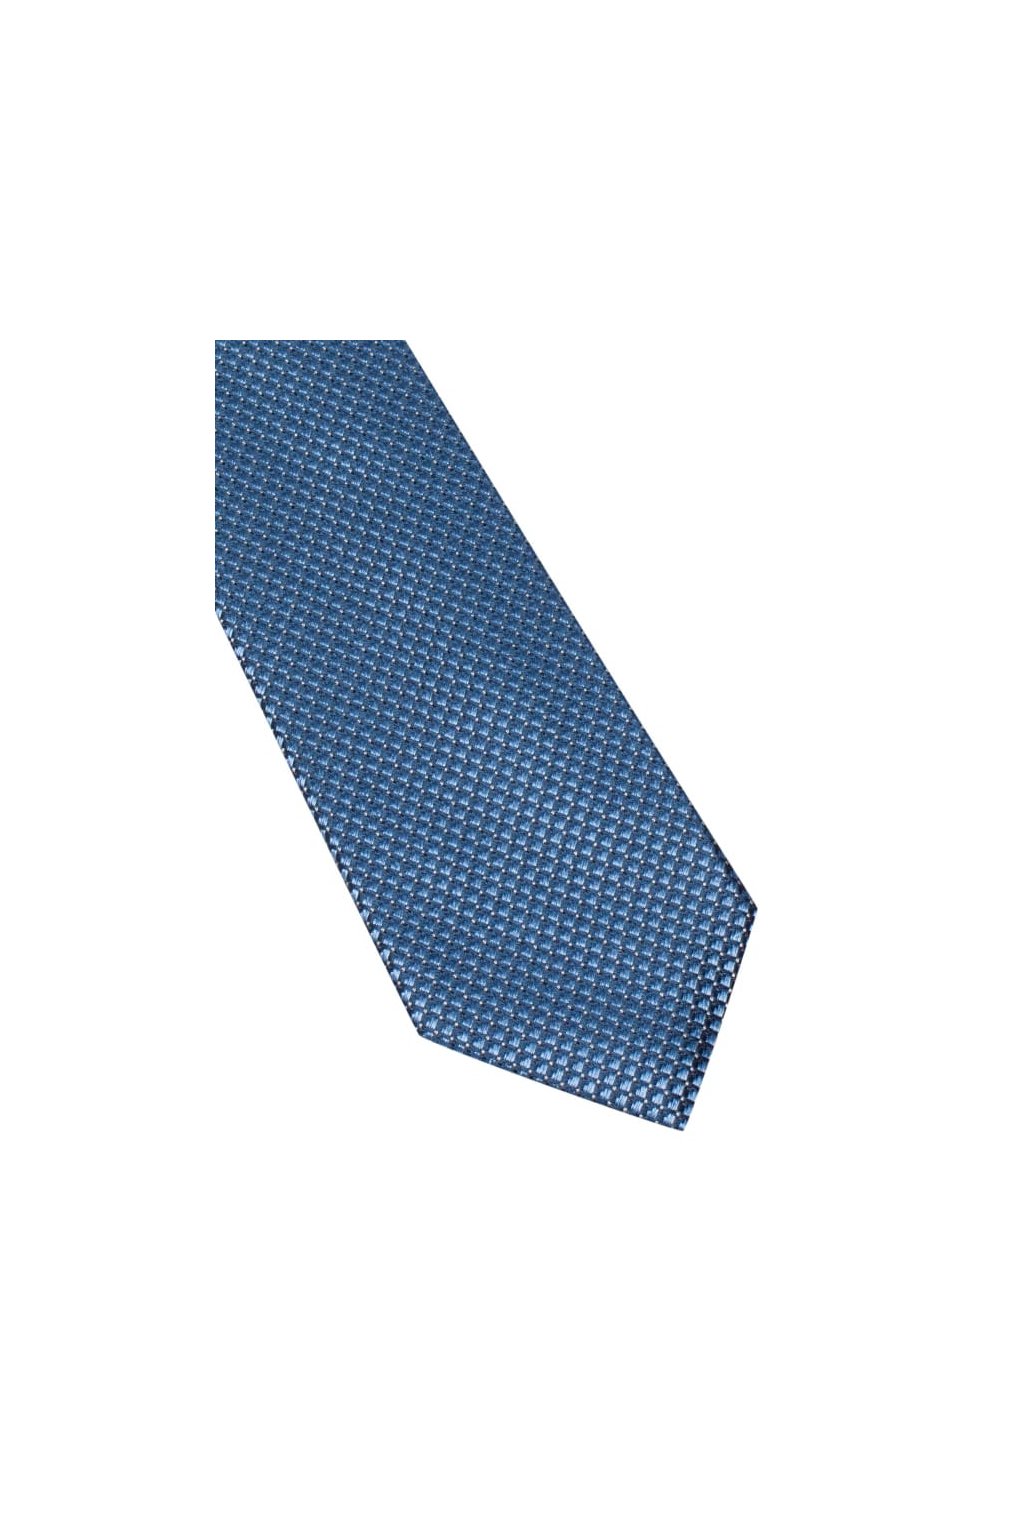 Úzká hedvábná kravata Eterna - modrá s jemnou strukturou